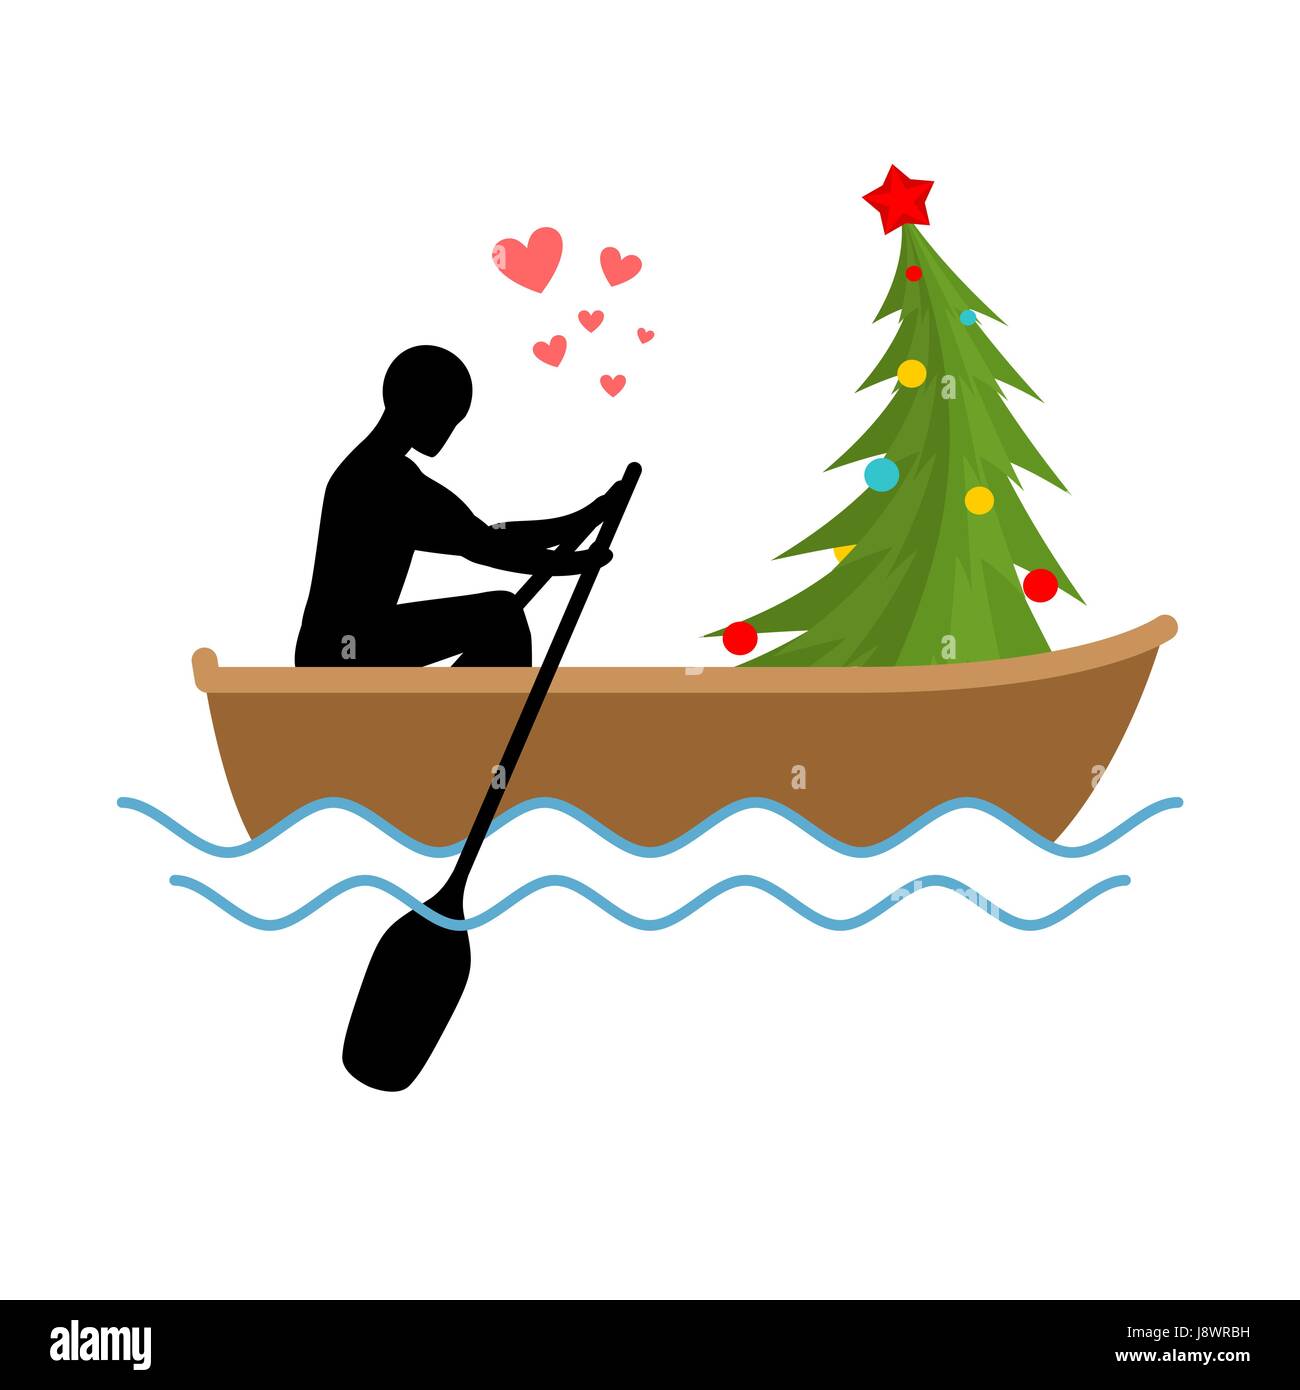 Amoureux de Noël. L'homme et l'arbre de Noël promenade en bateau. Les amateurs de voile. L'homme roule en gondole. Rendez-vous en bateau sur l'étang. Nouvel An romantique illustratio Illustration de Vecteur